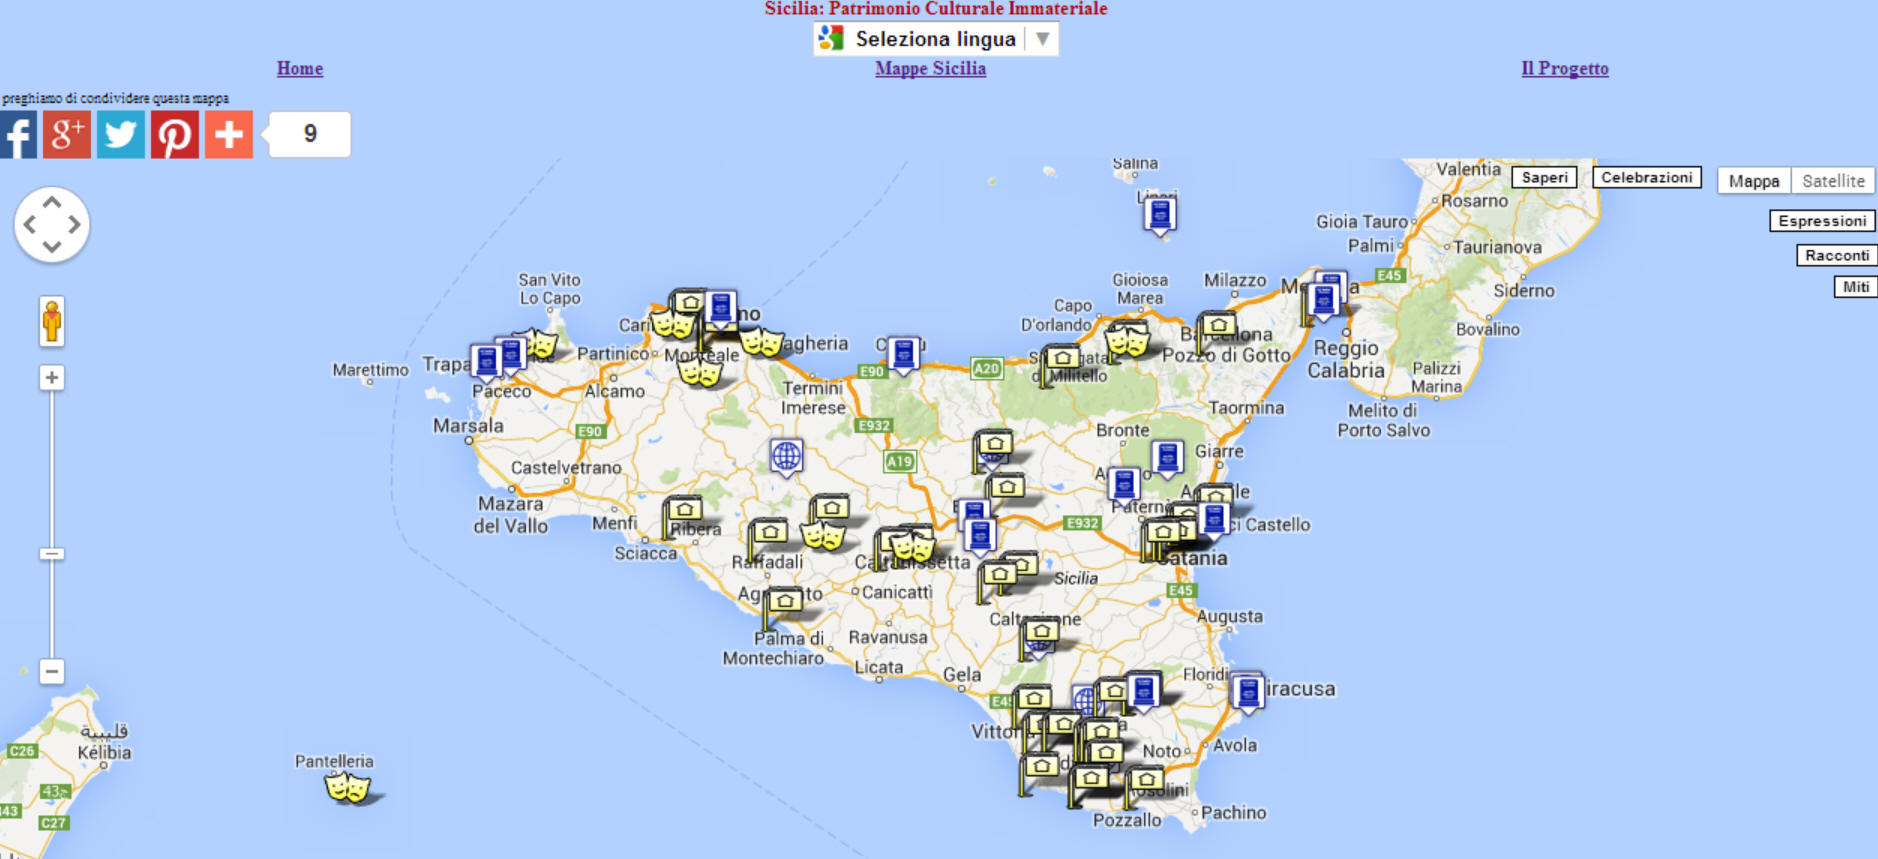 mappa patrimonio immatriale di Sicilia